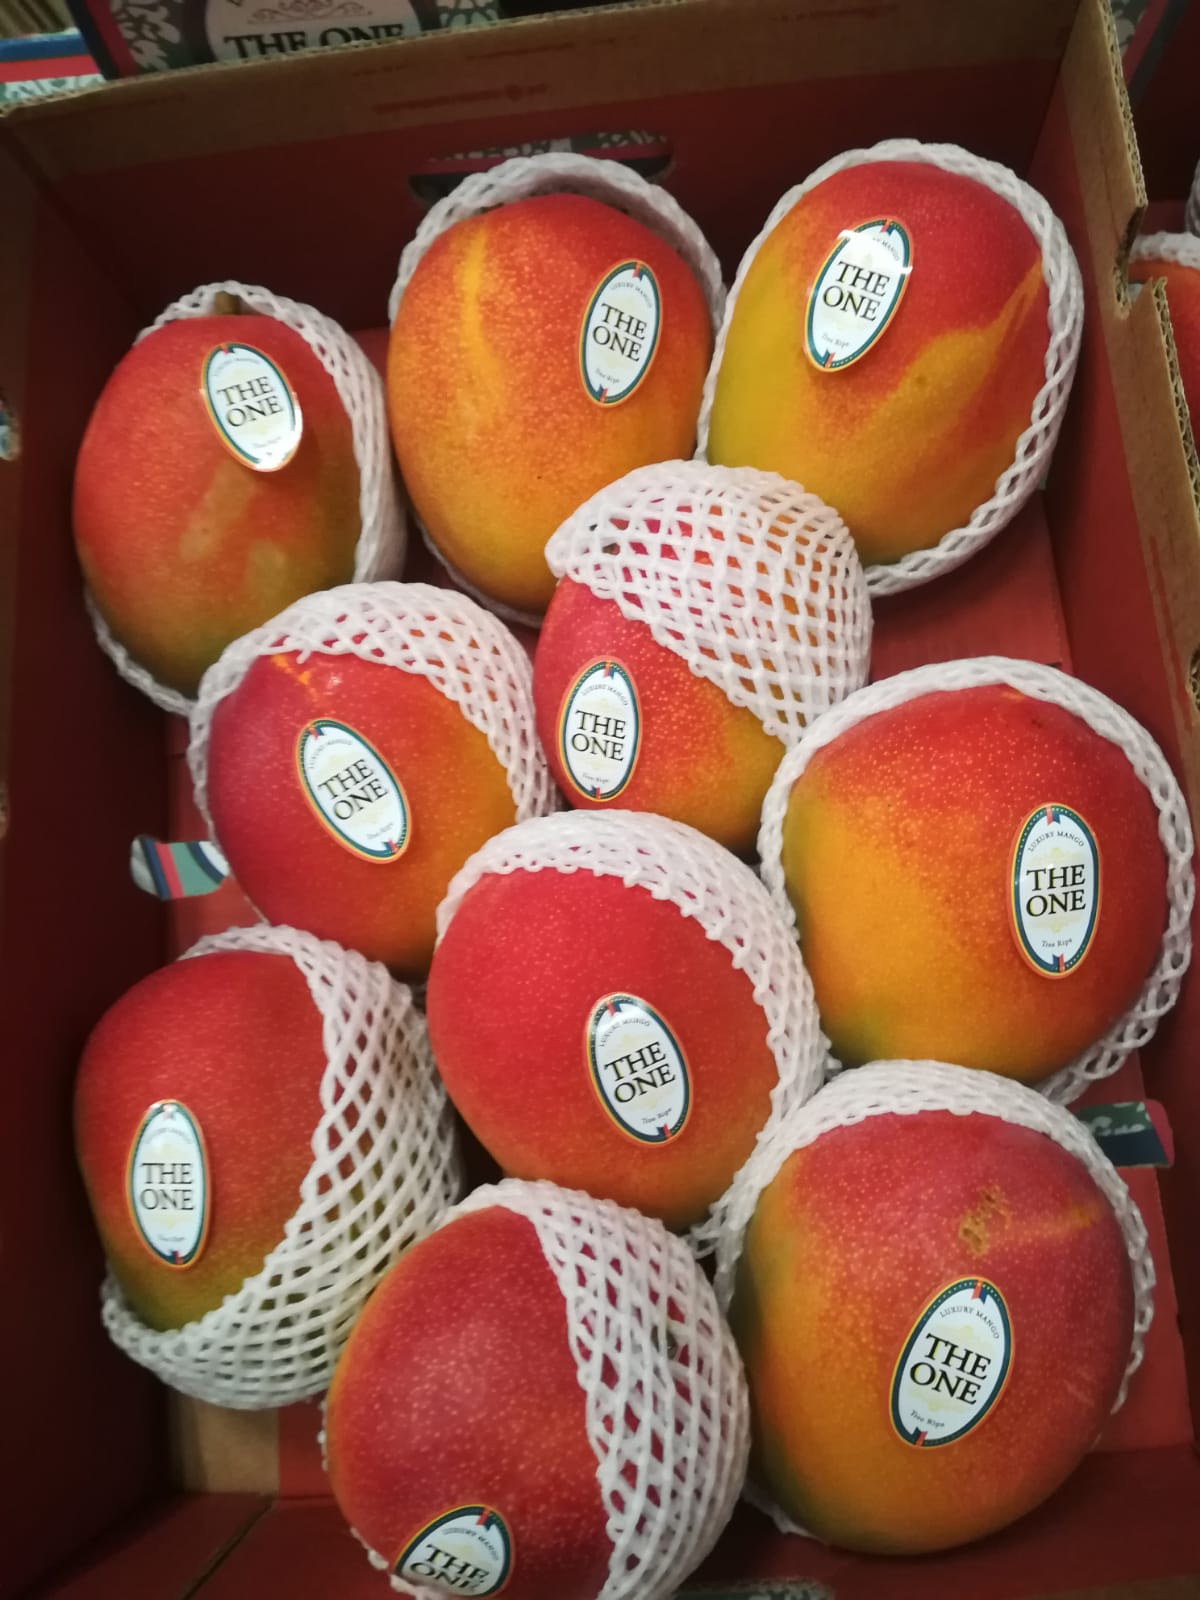 Mango The One | Vivaldifruits